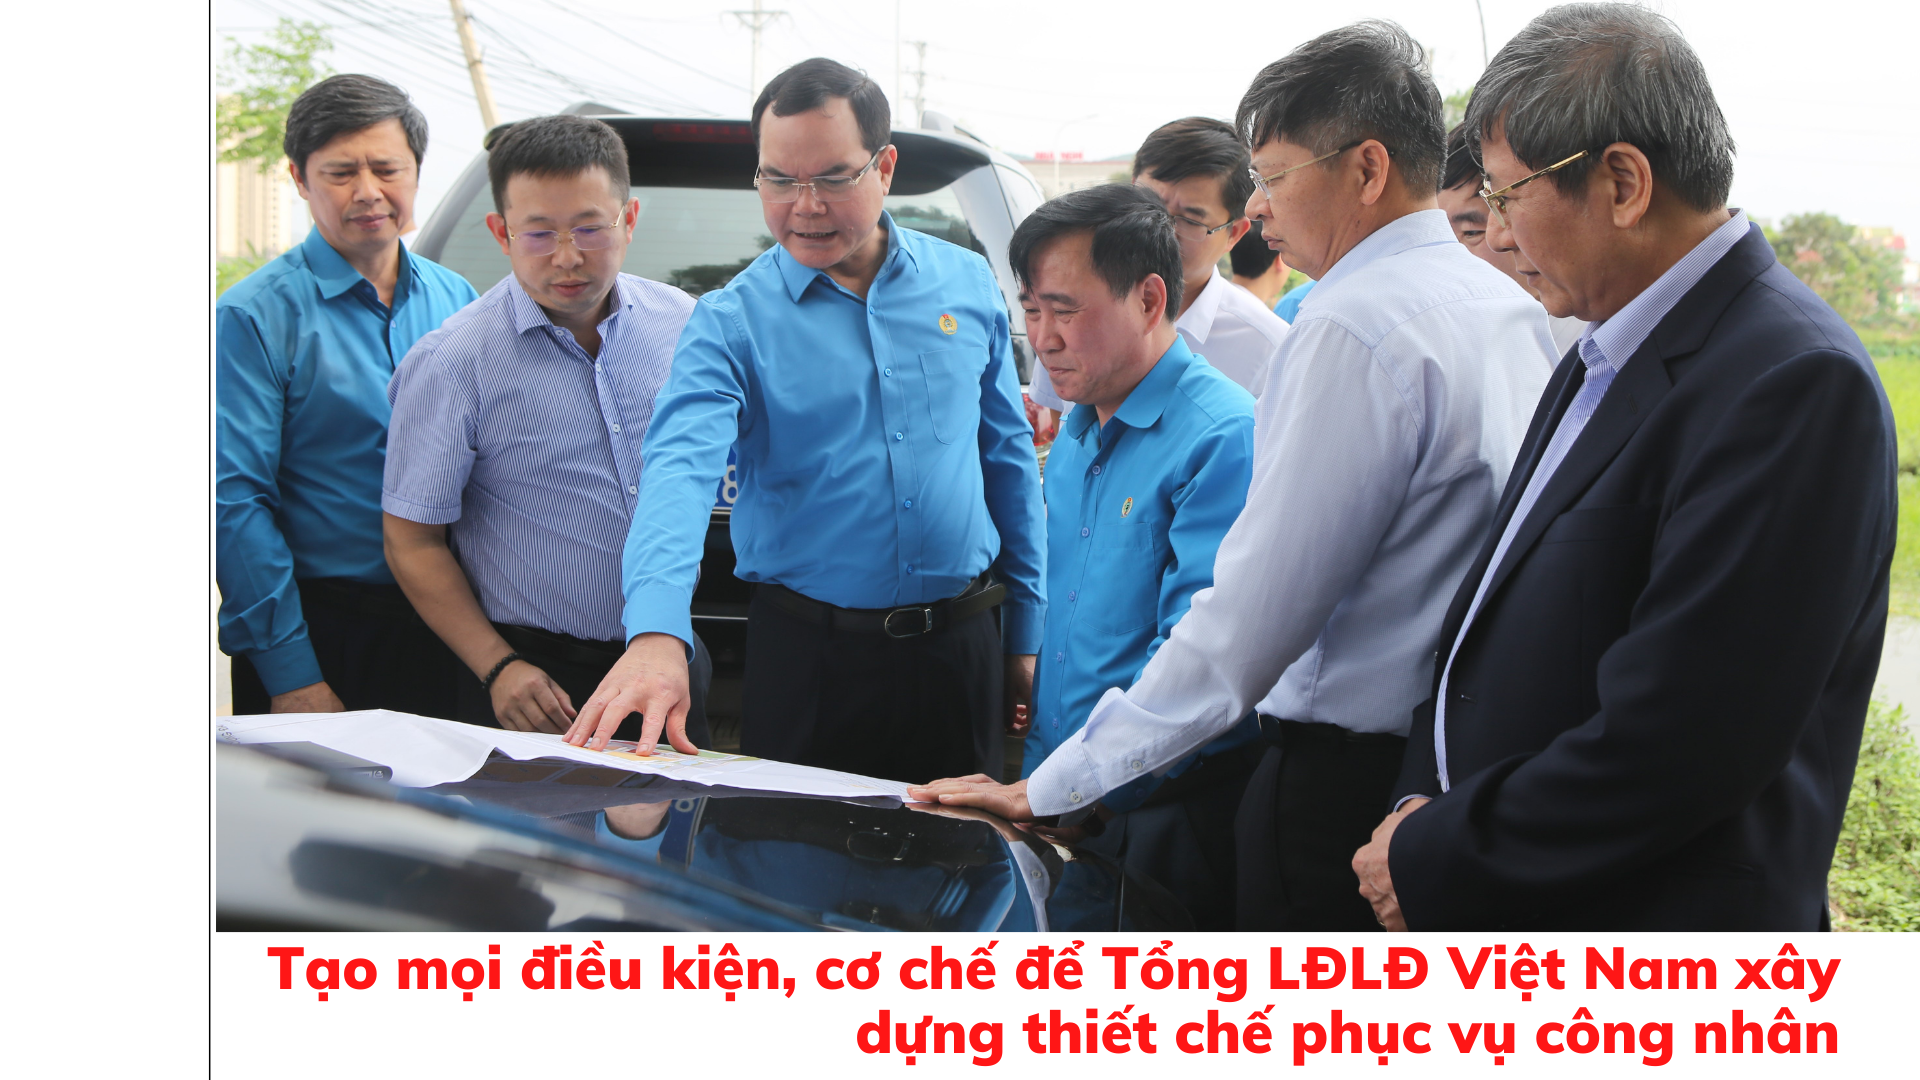 Tạo mọi điều kiện, cơ chế để Tổng LĐLĐ Việt Nam xây dựng thiết chế phục vụ công nhân